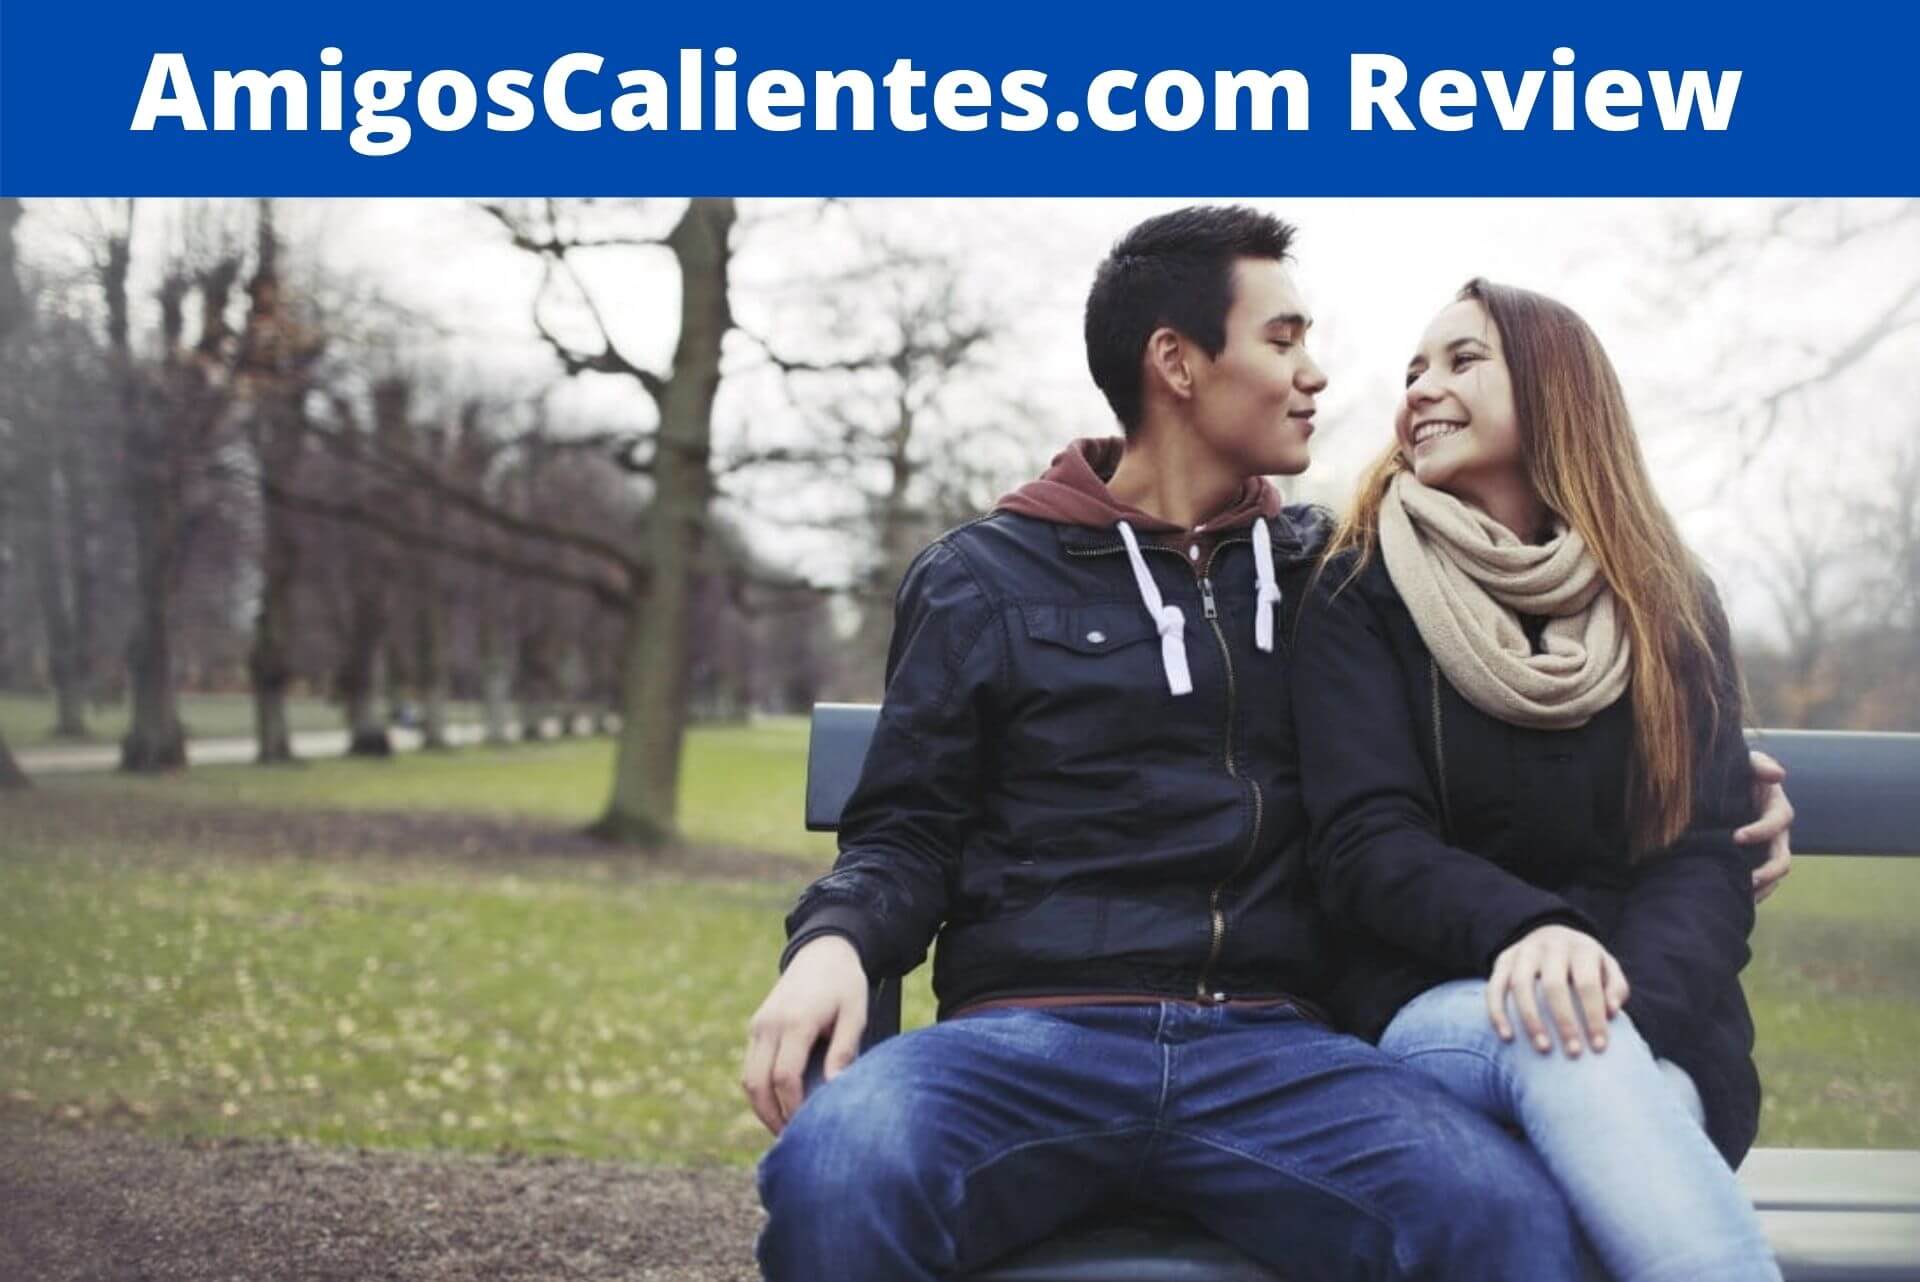 AmigosCalientes.com Review